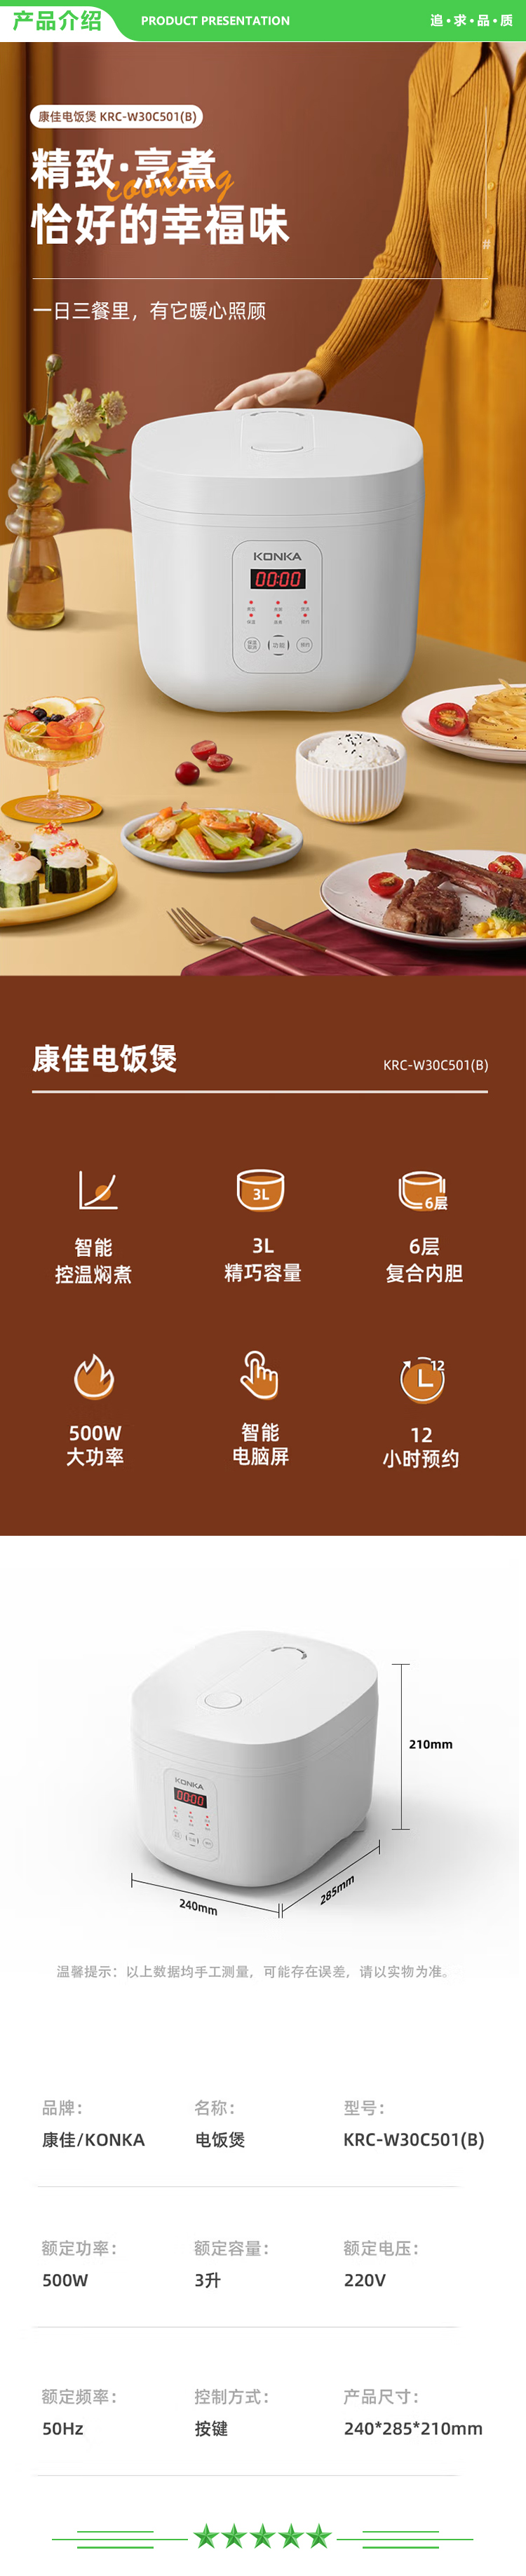 康佳 KONKA KRC-W30C501(B) 电饭煲 小电饭锅 3L容量1-4人智能家用12小时预约煮饭煮粥锅.jpg